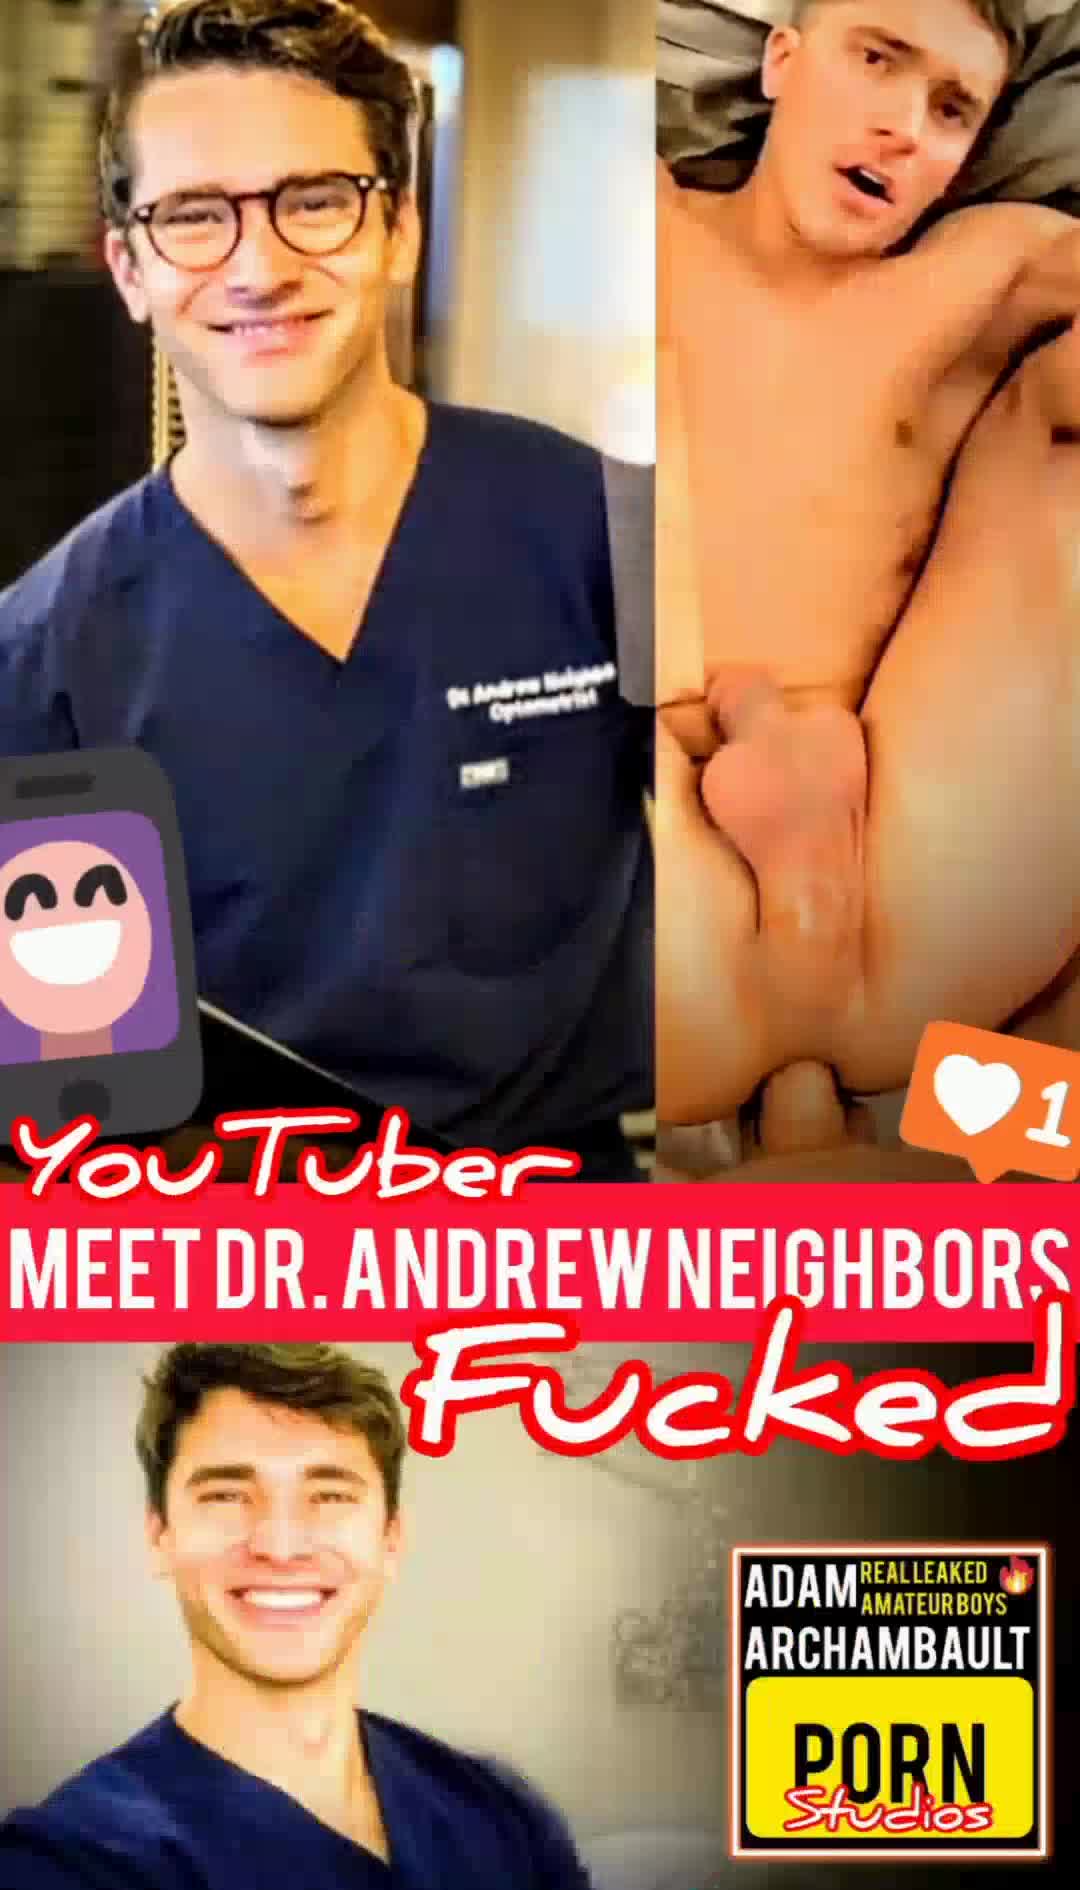 यूट्यूबर डॉक्टर एंड्रयू नेबर्स पूरी तरह से घटिया वेश्या के रूप में उजागर!